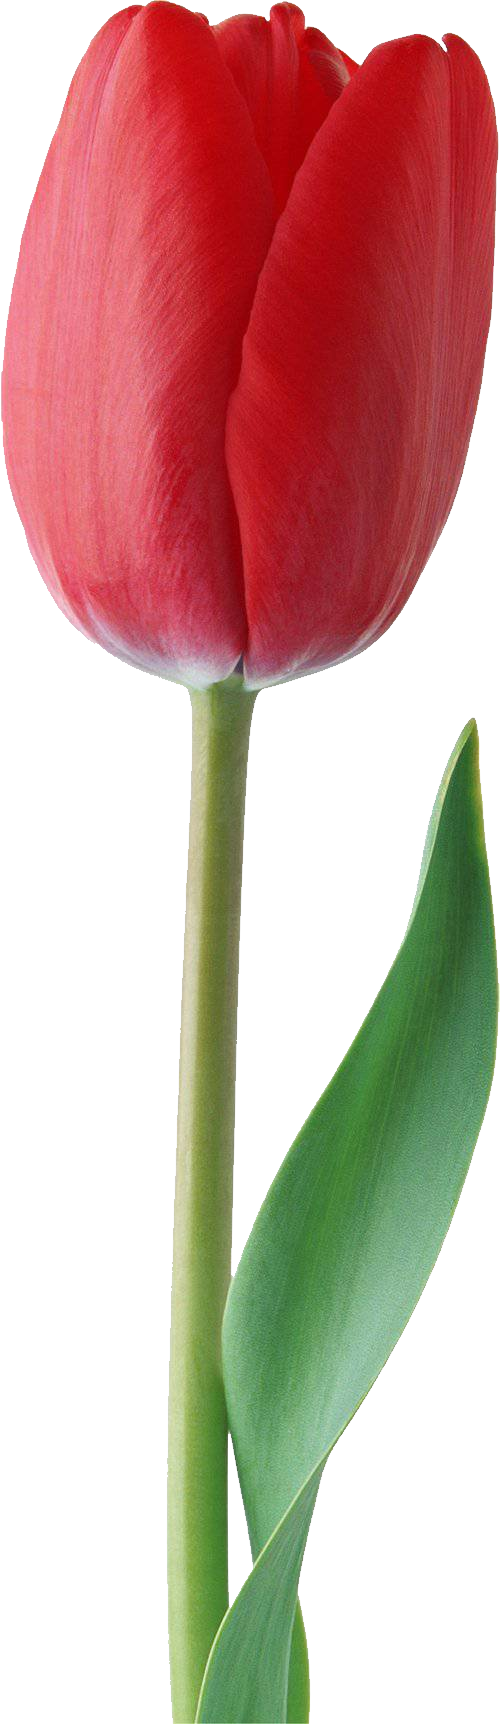 Красный тюльпан PNG Фотографии